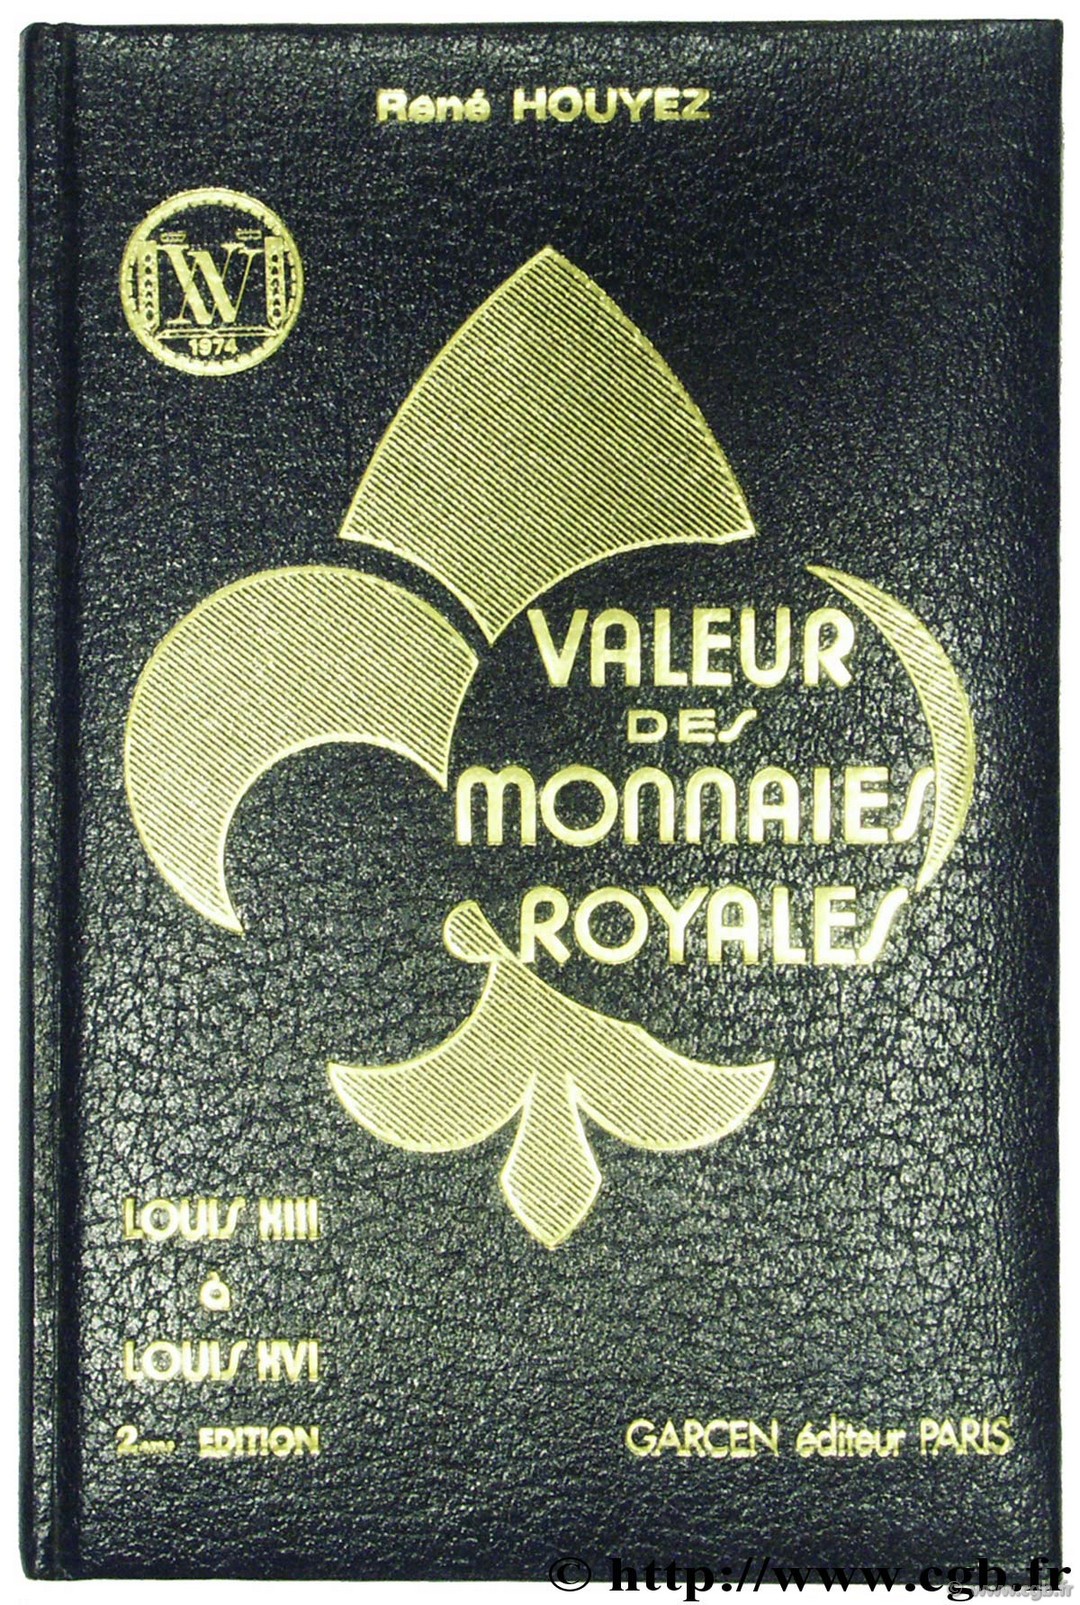 Valeur des monnaies royales - Louis XIII à Louis XVI HOUYEZ R.